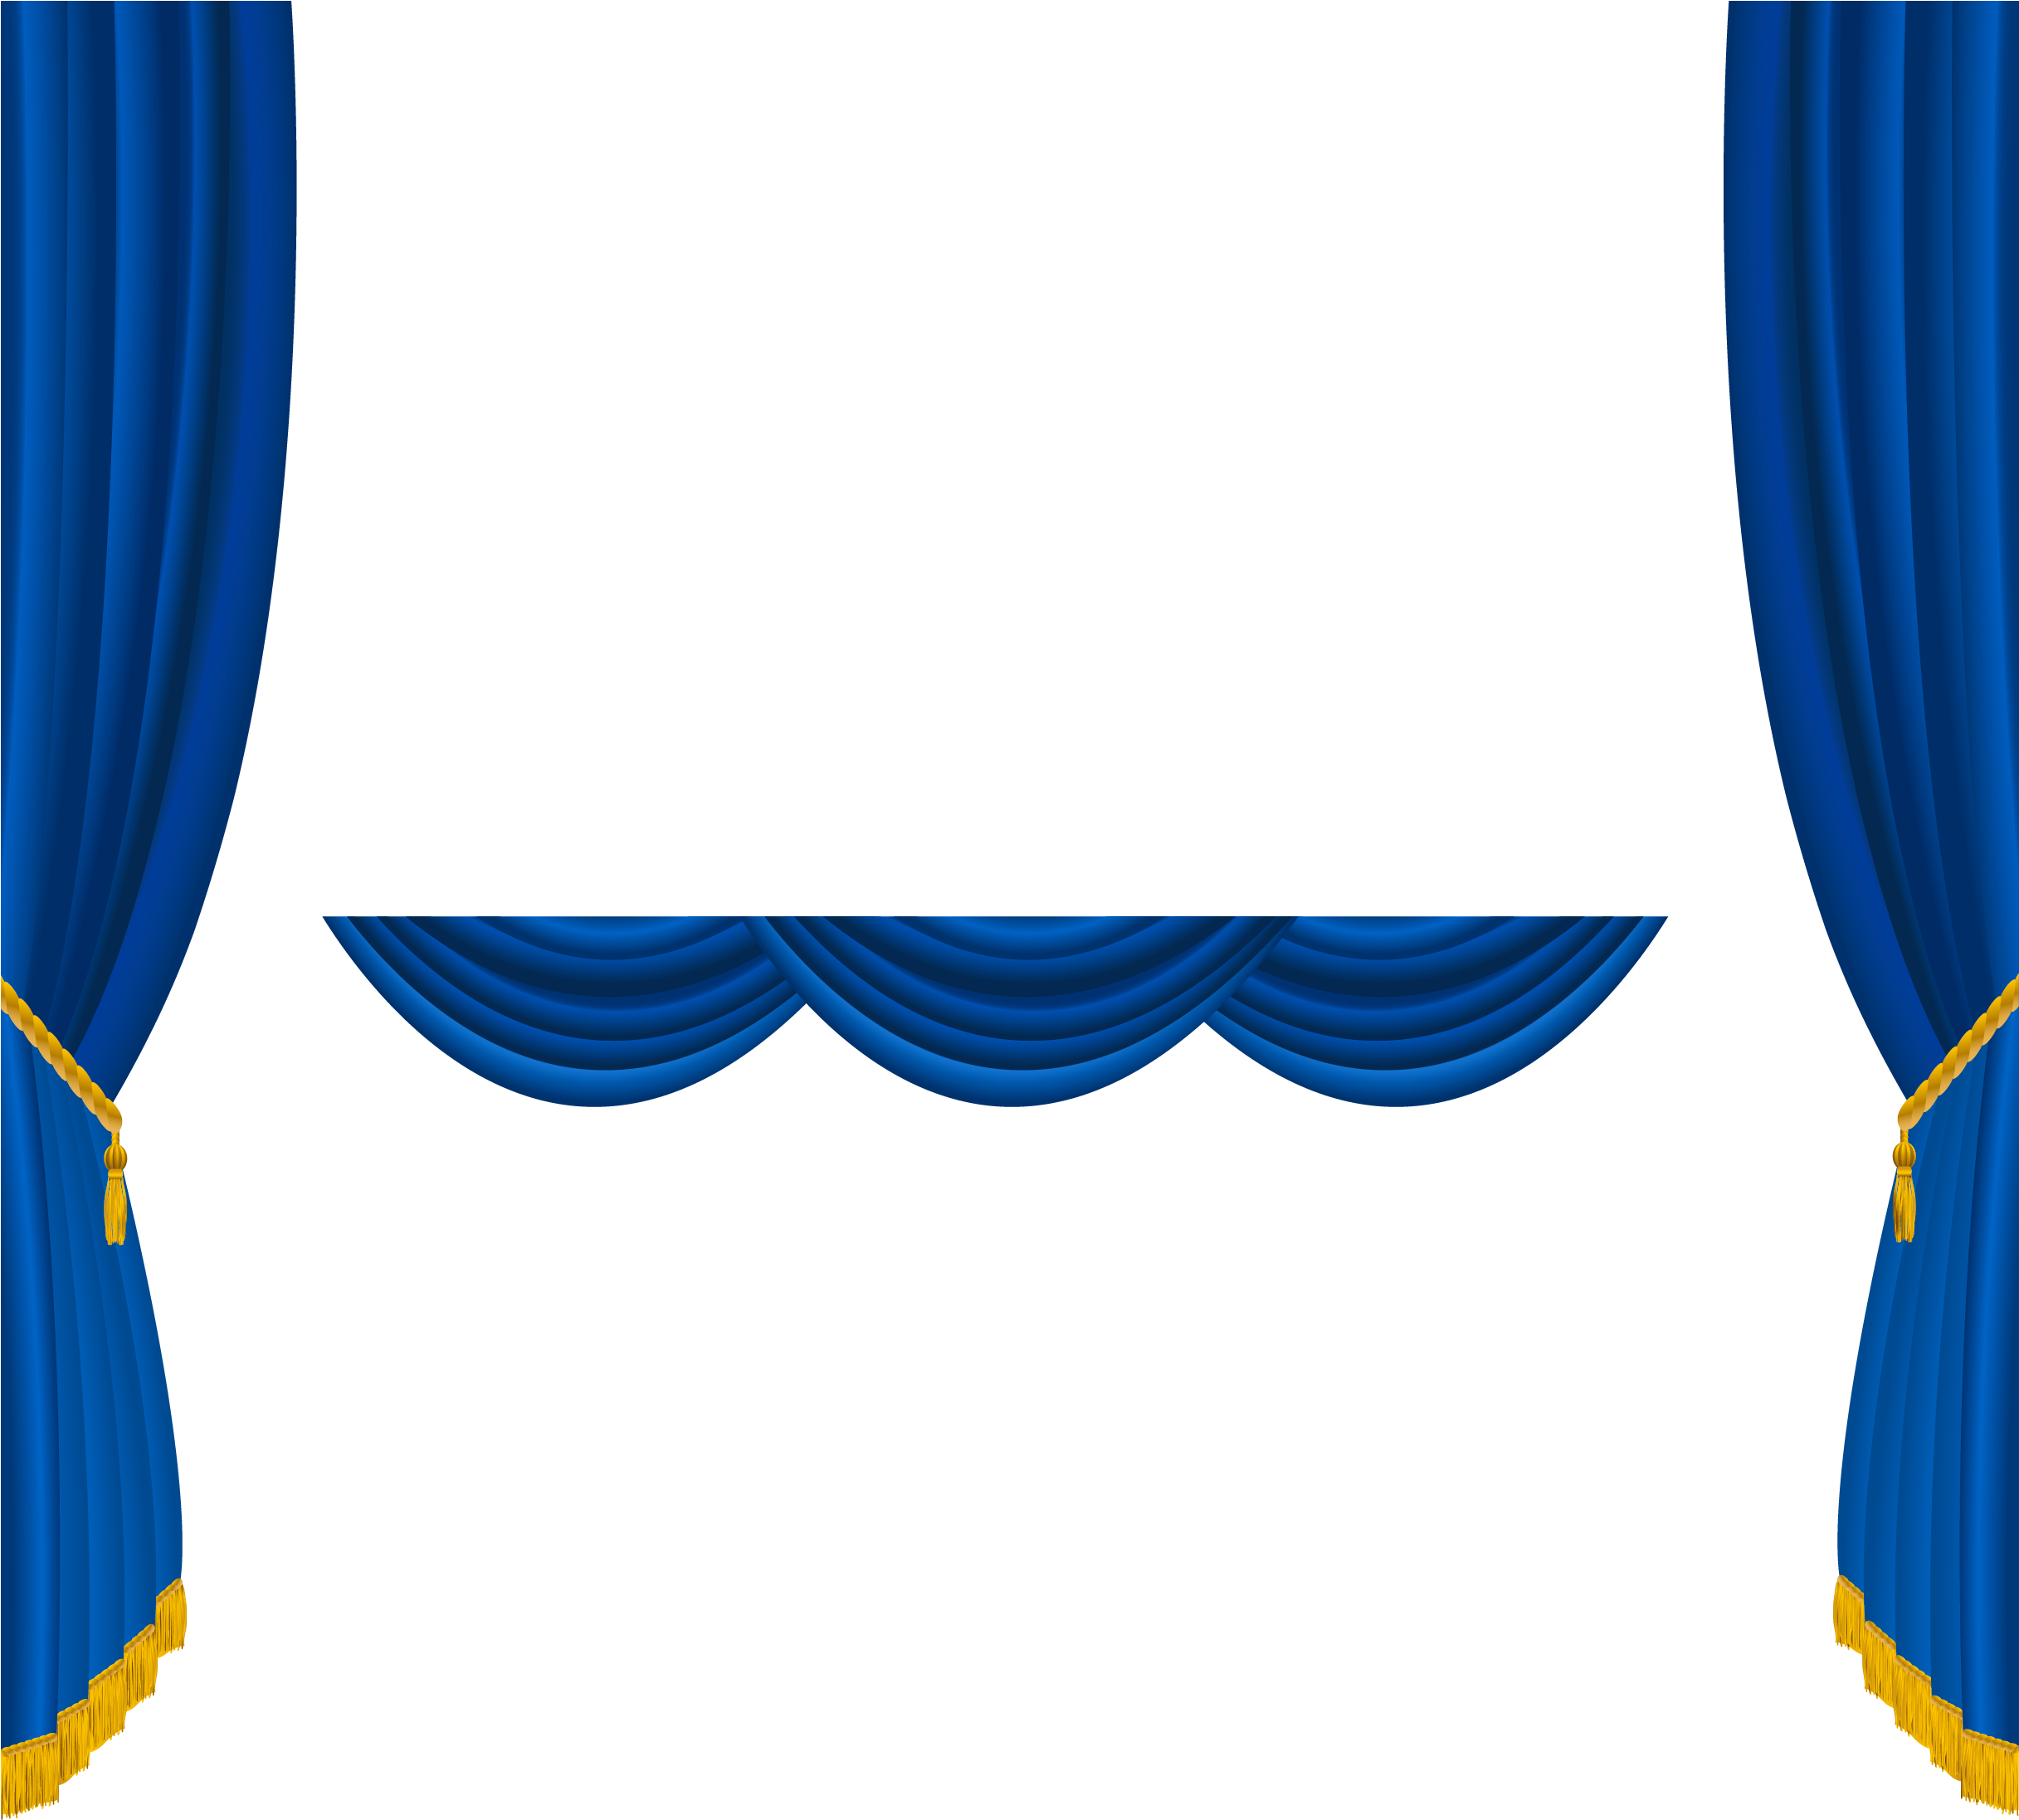 Curtain Transparent Image